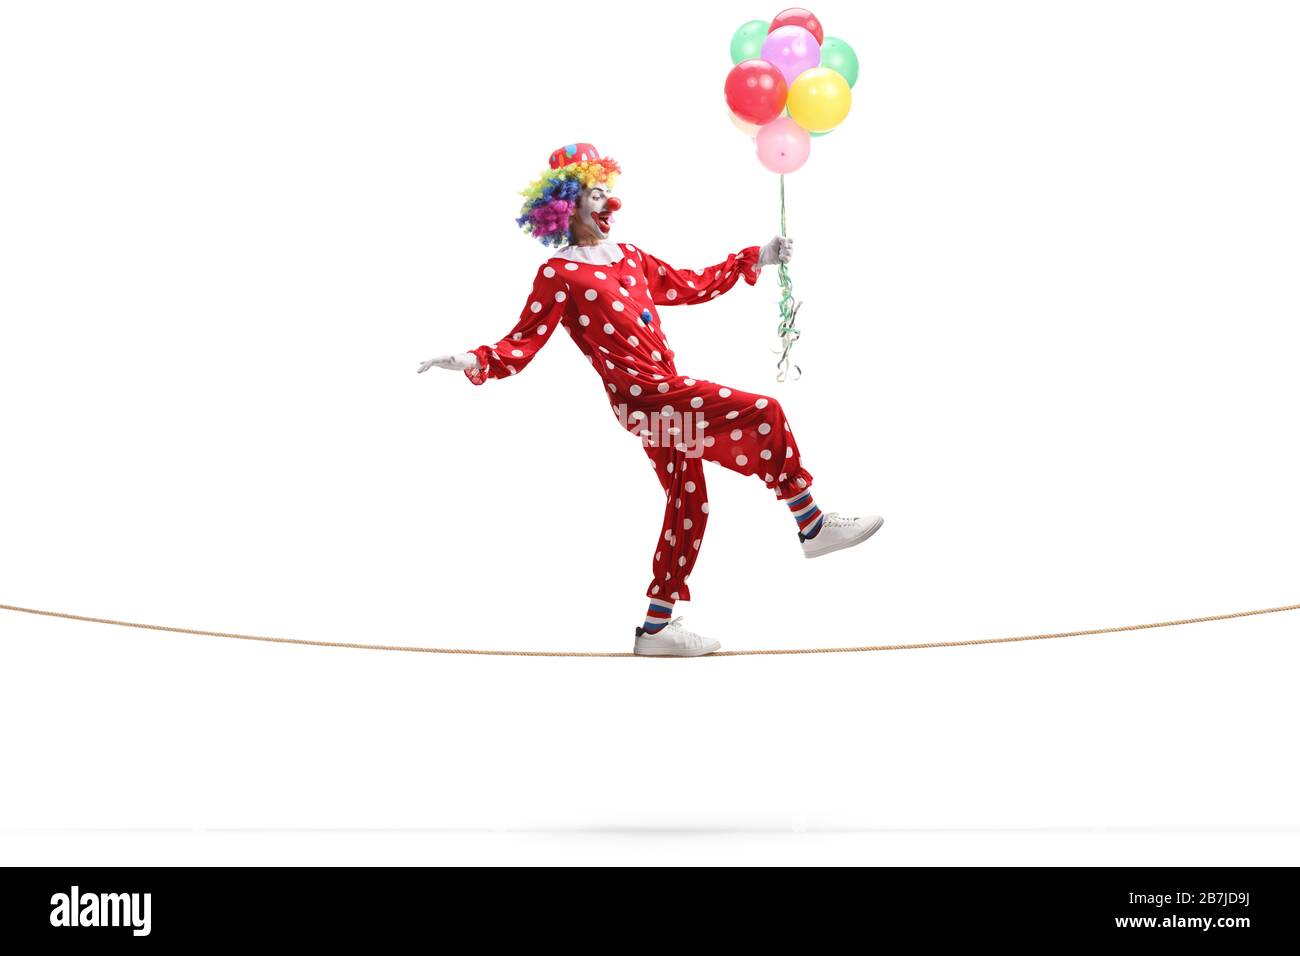 Profil de pleine longueur tiré d'une clown marchant sur une corde et tenant une bande de ballons isolés sur fond blanc Banque D'Images